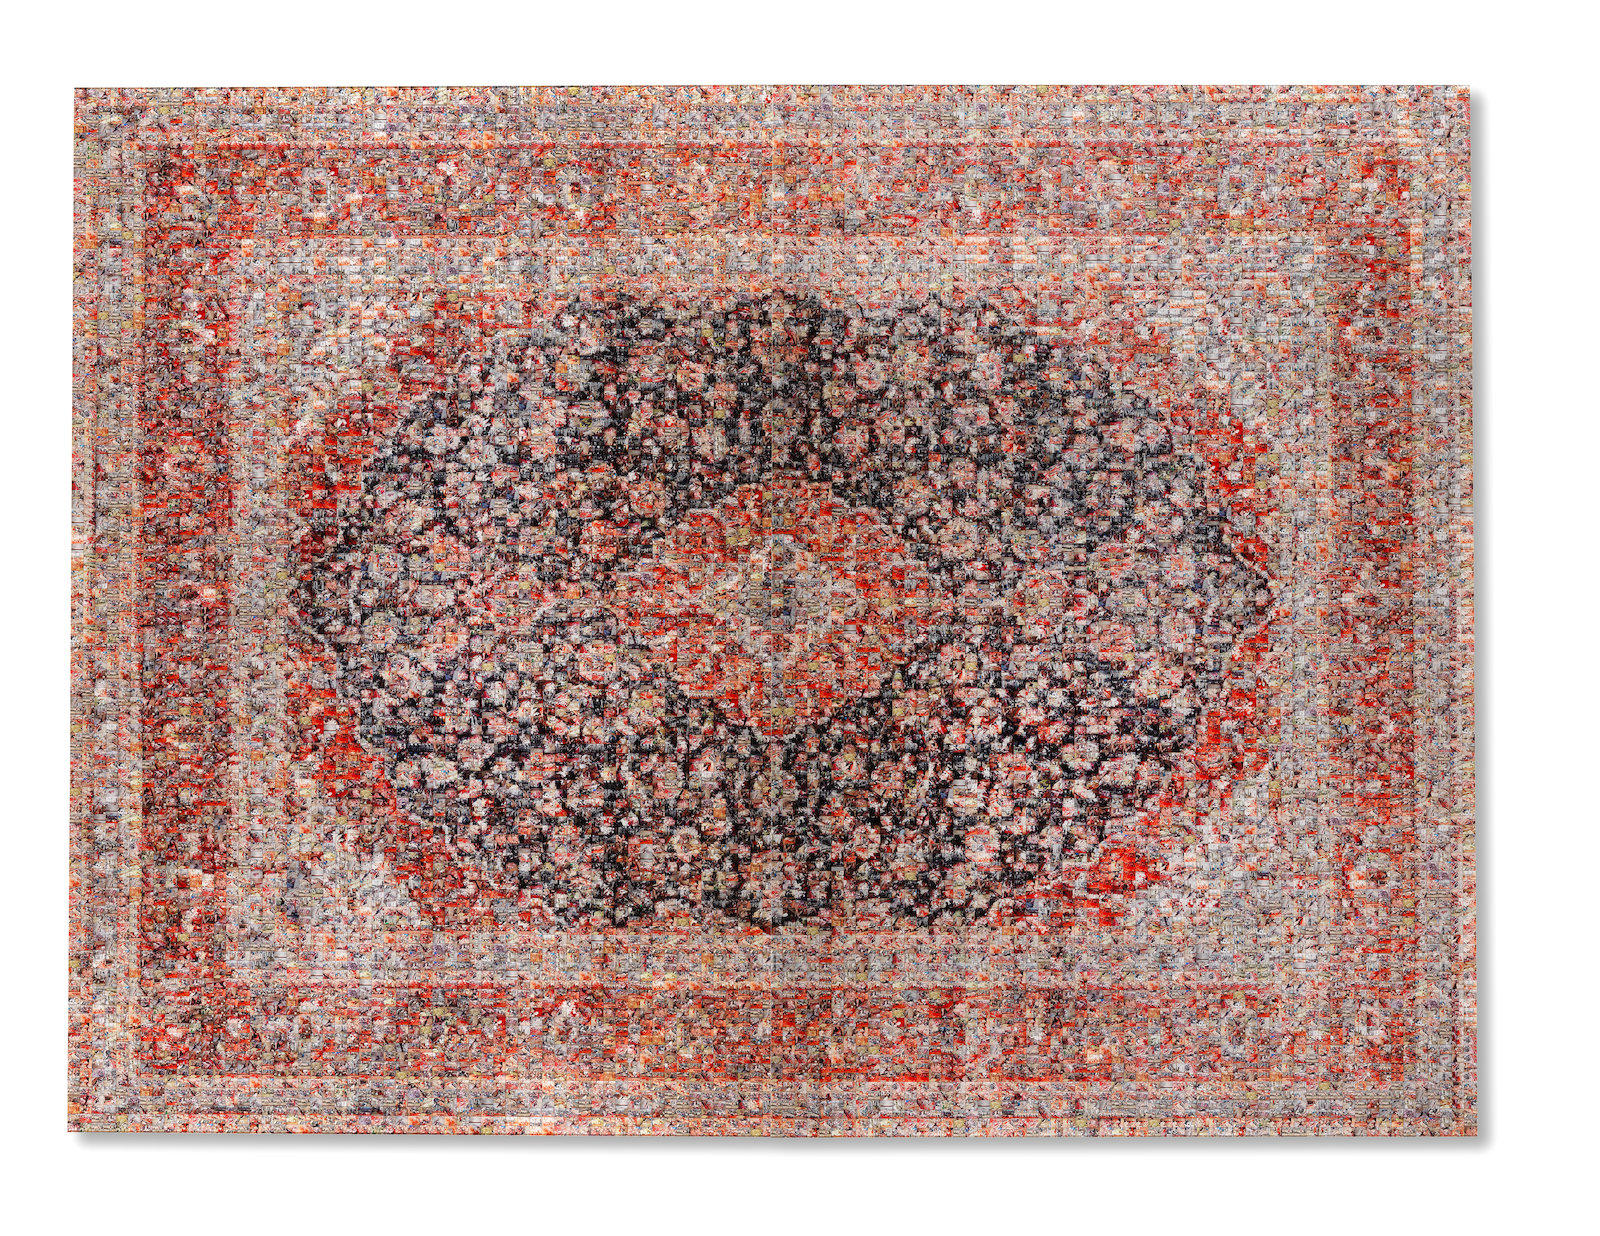 Rashid Rana's Red Carpet art work. Photo Source: Bonhams.com